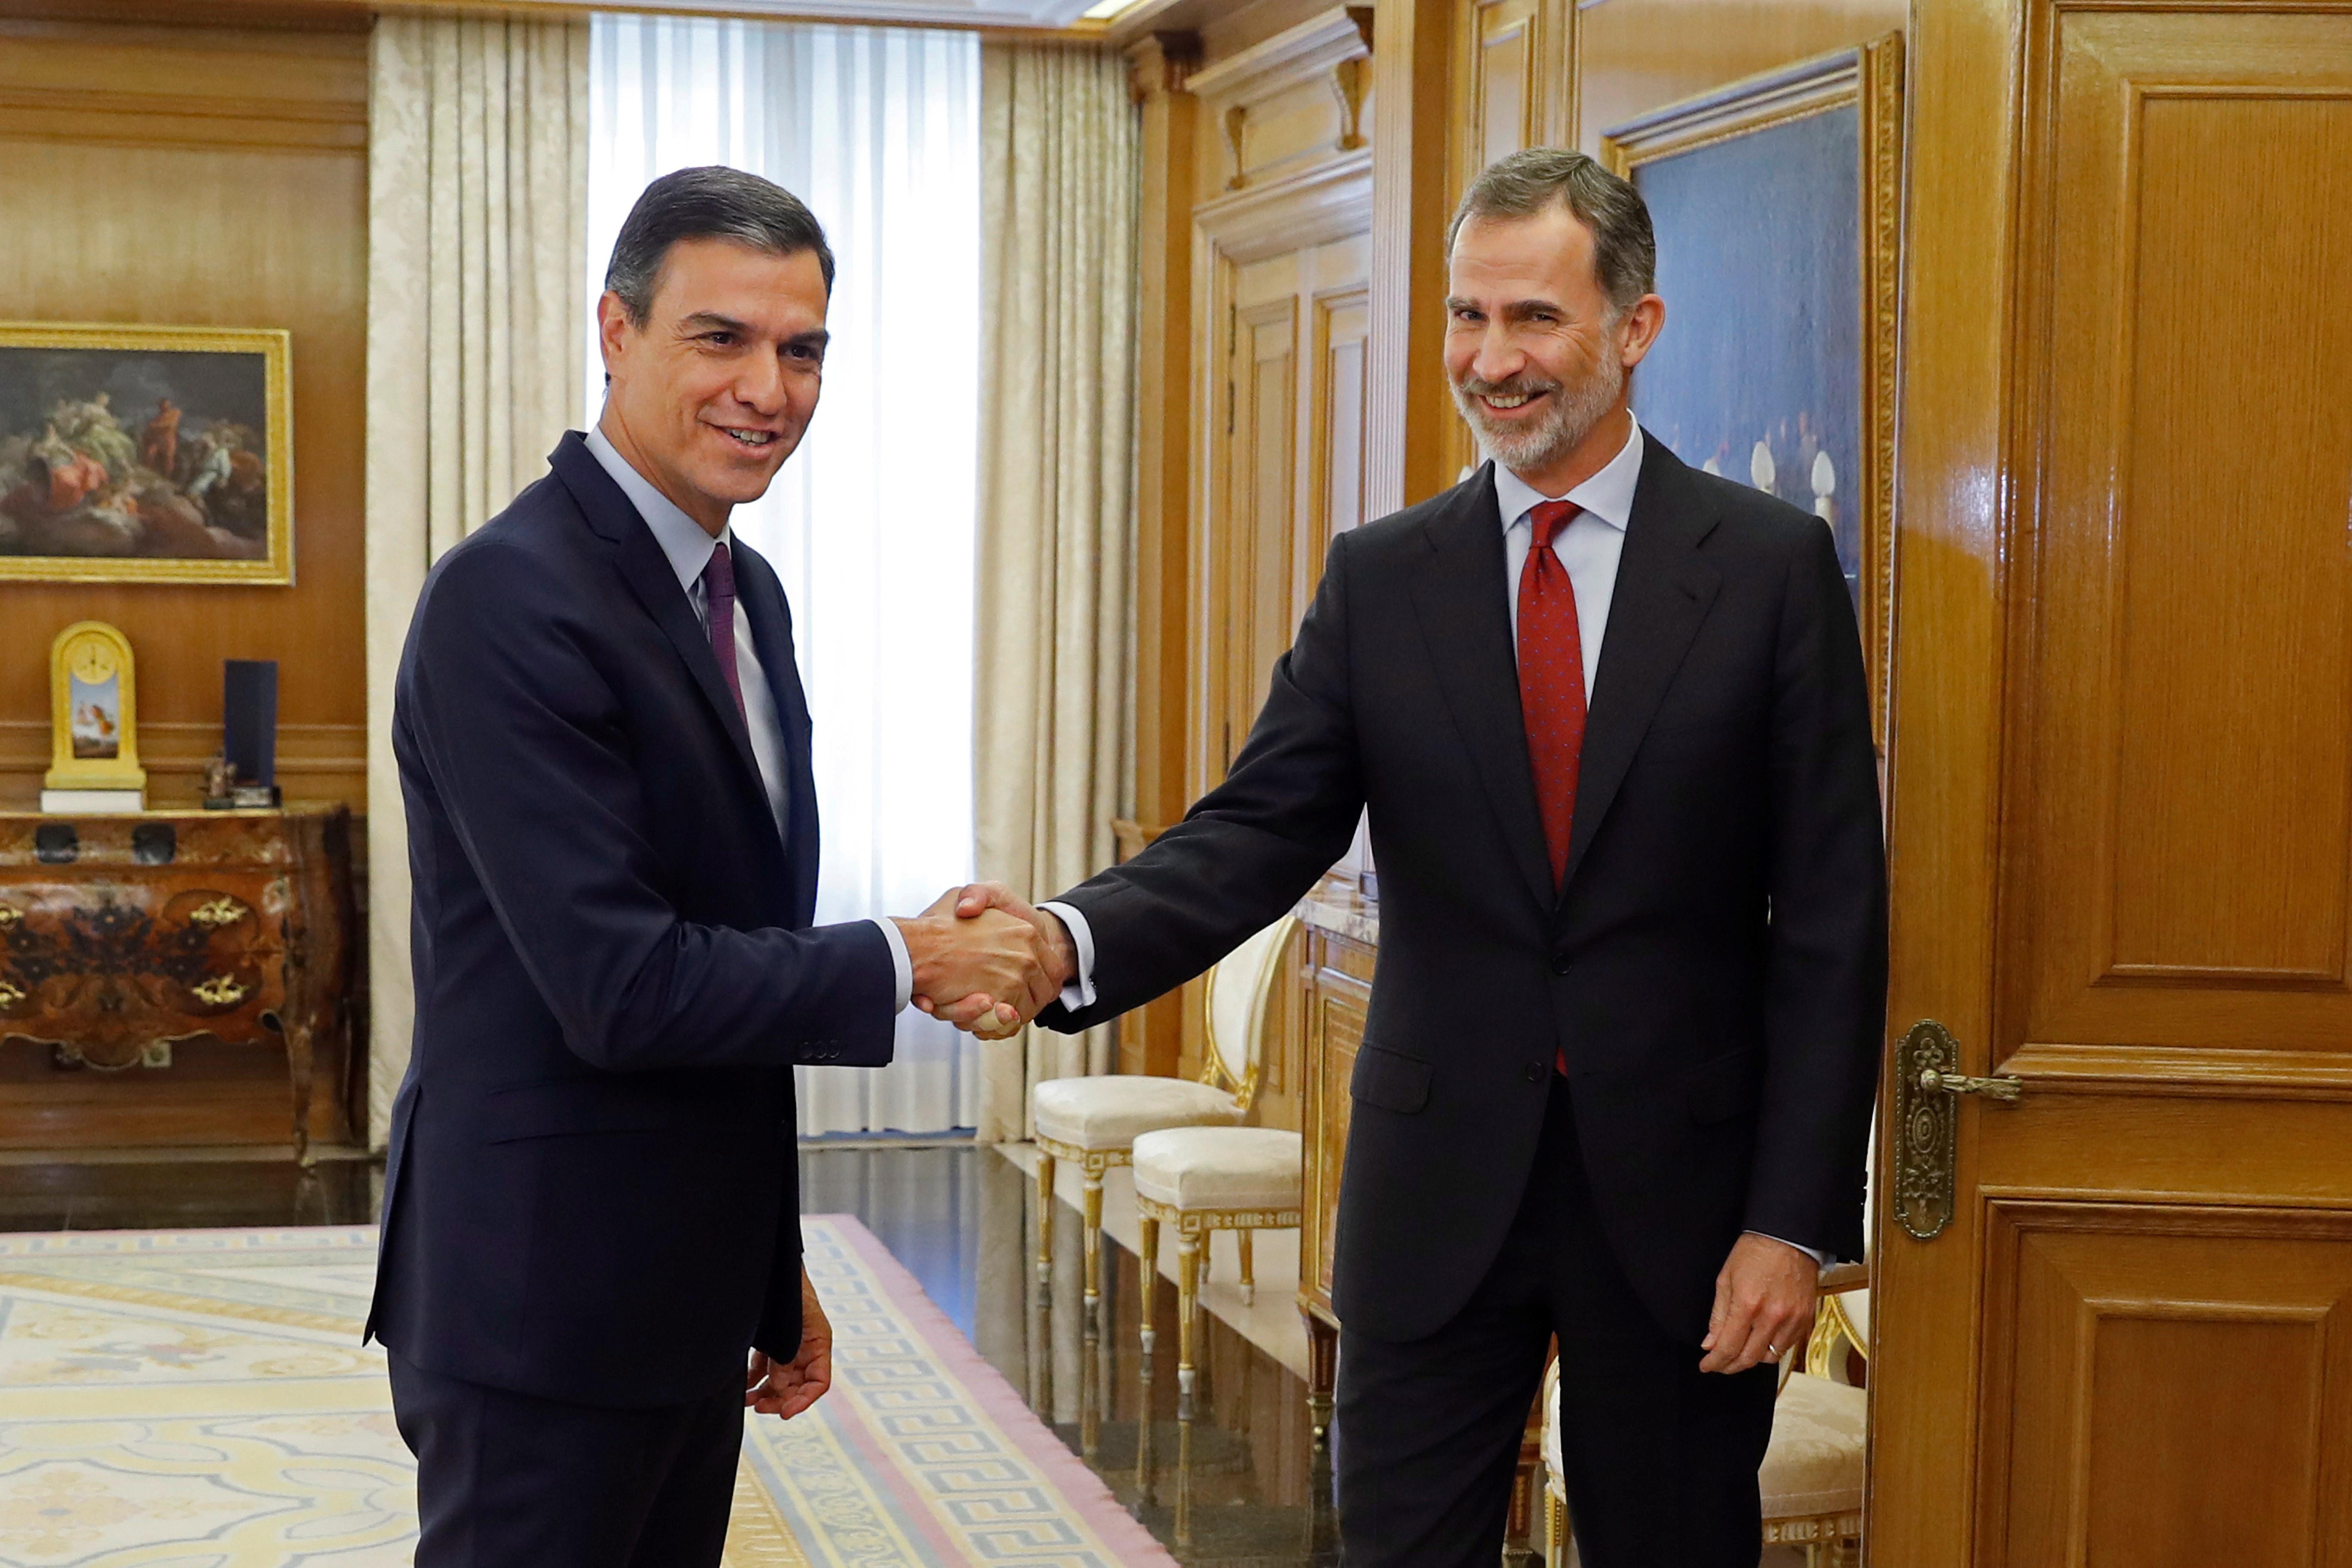 Sánchez se someterá a investidura "en breve" aunque no haya atado los apoyos